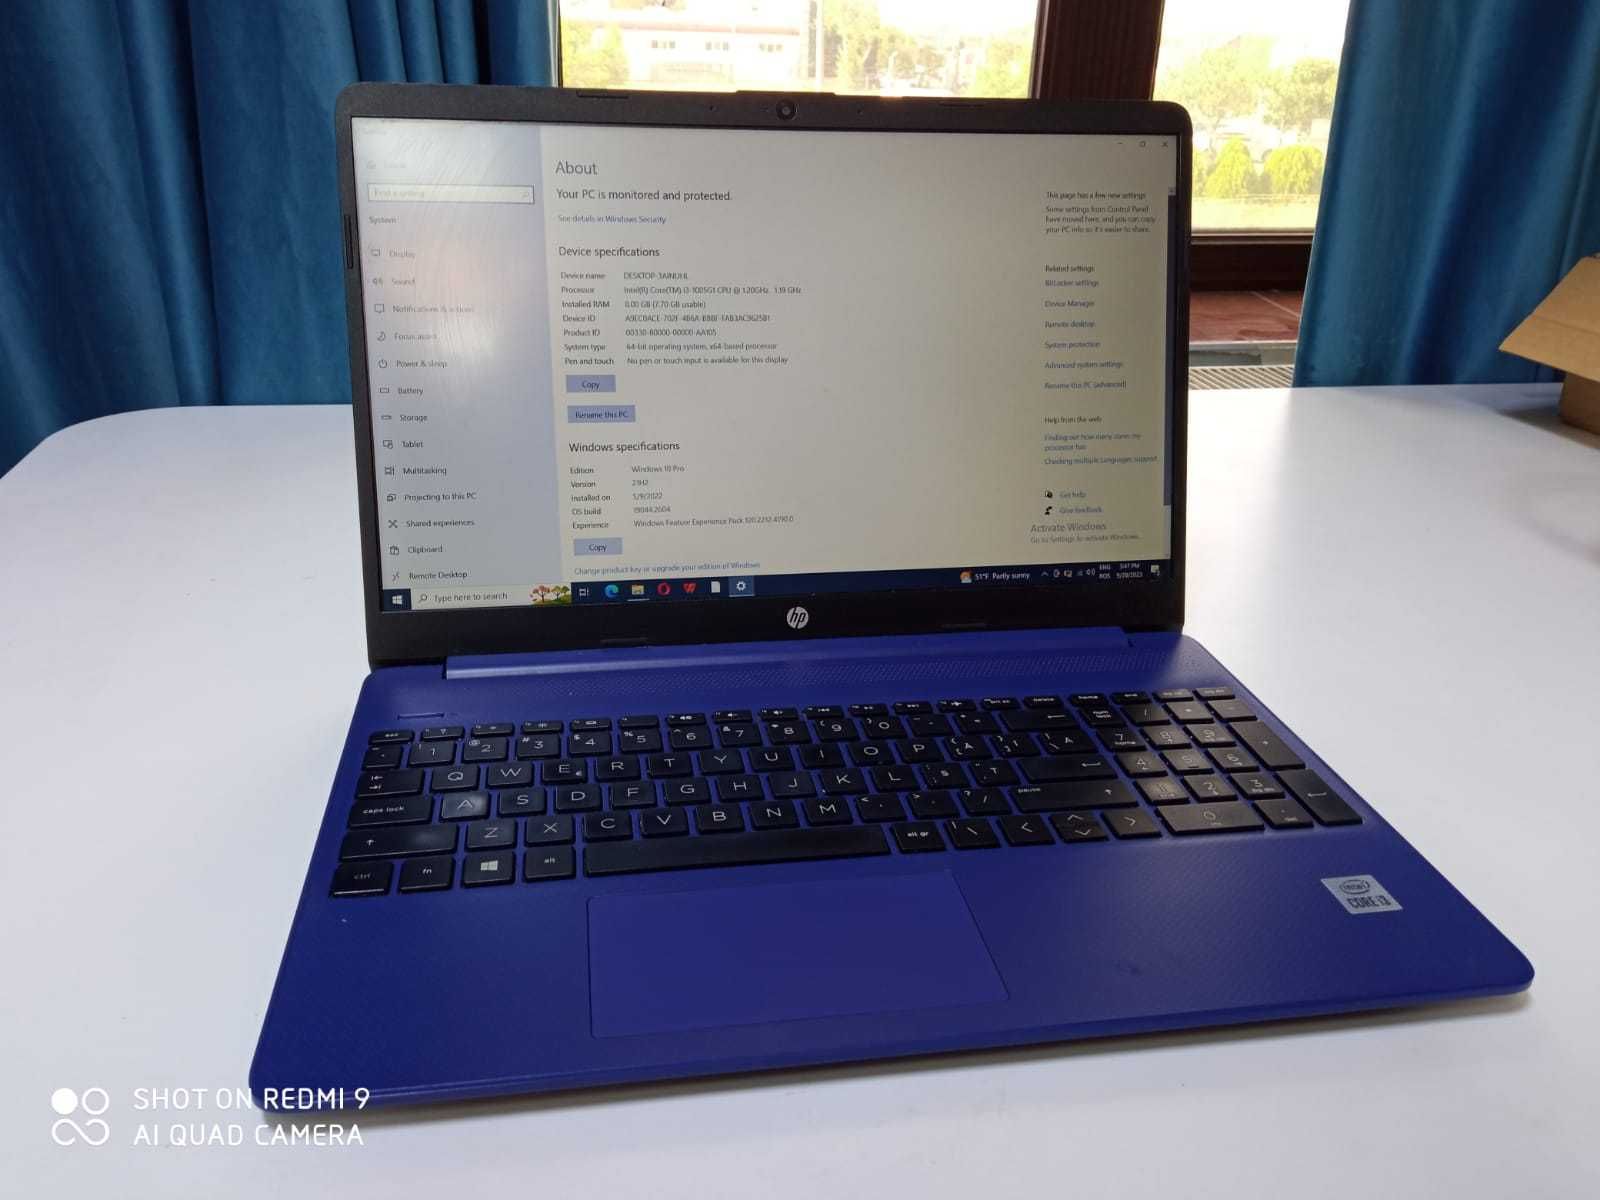 Laptop HP, Intel Core i3-1005G1, 8GB, SSD 512GB, Albastru